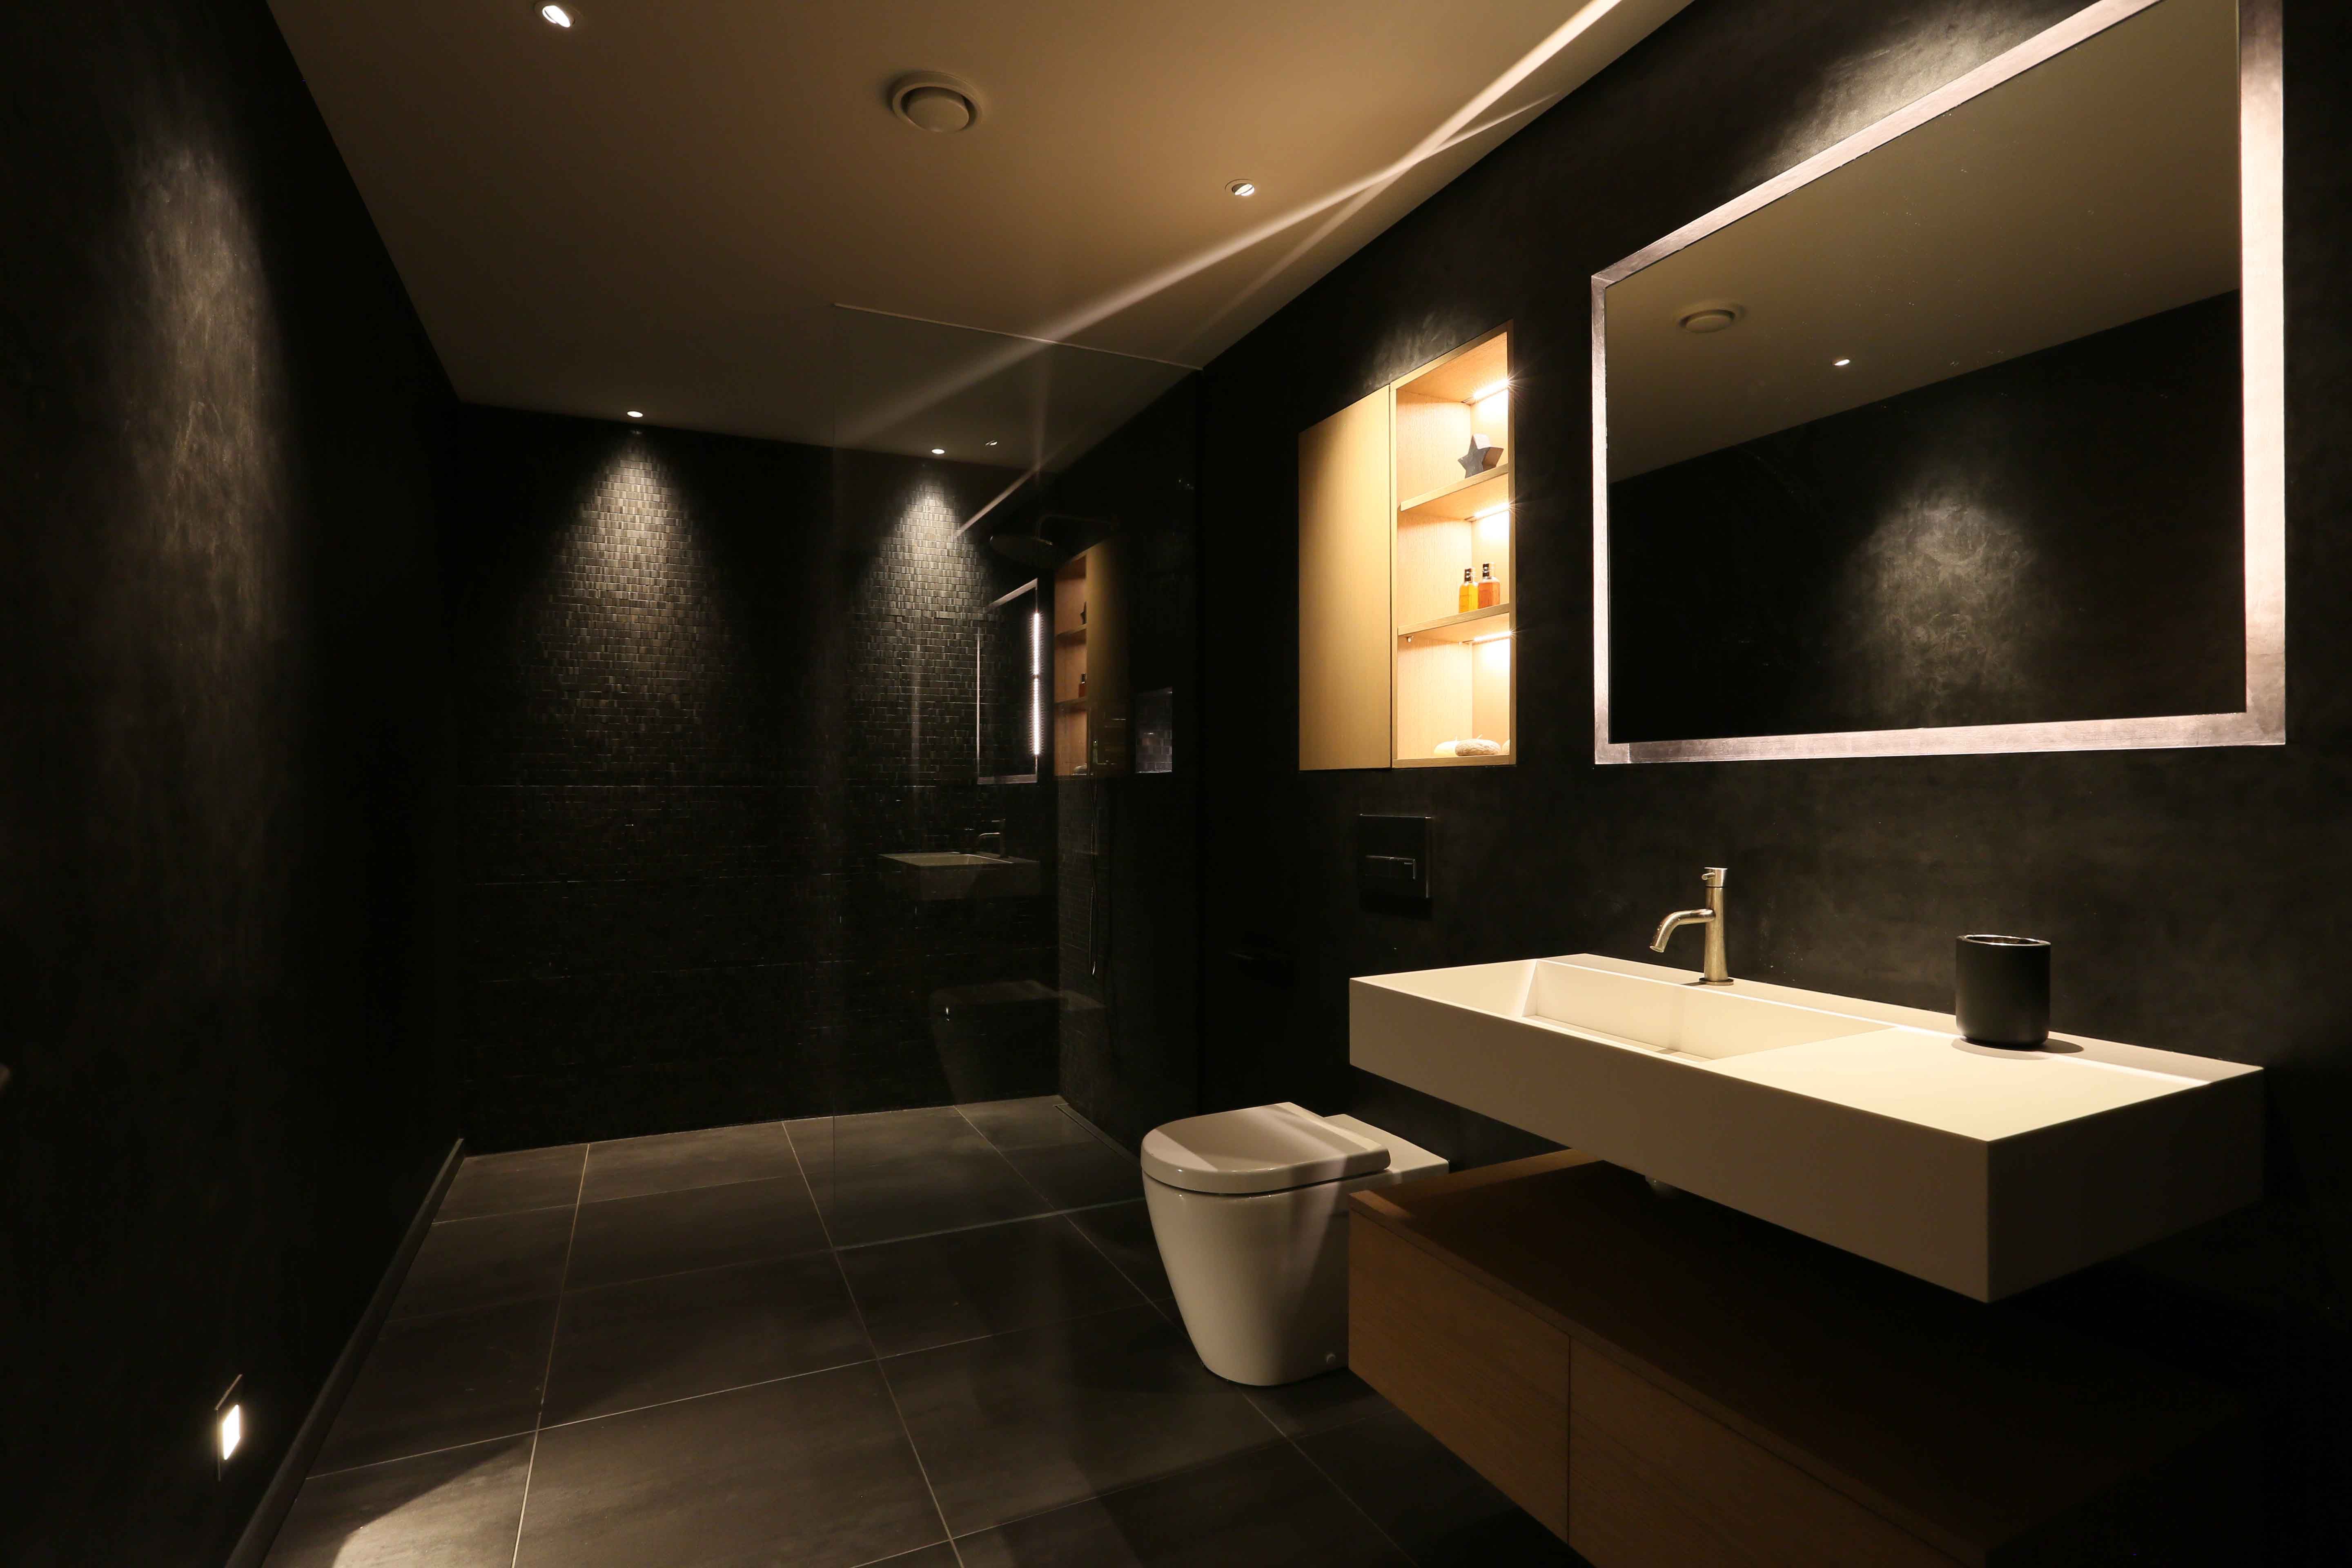 Ванны подсветка: Подсветка в ванной - 50 фото лучших идей освещения в ваннойДекор и дизайн интерьера